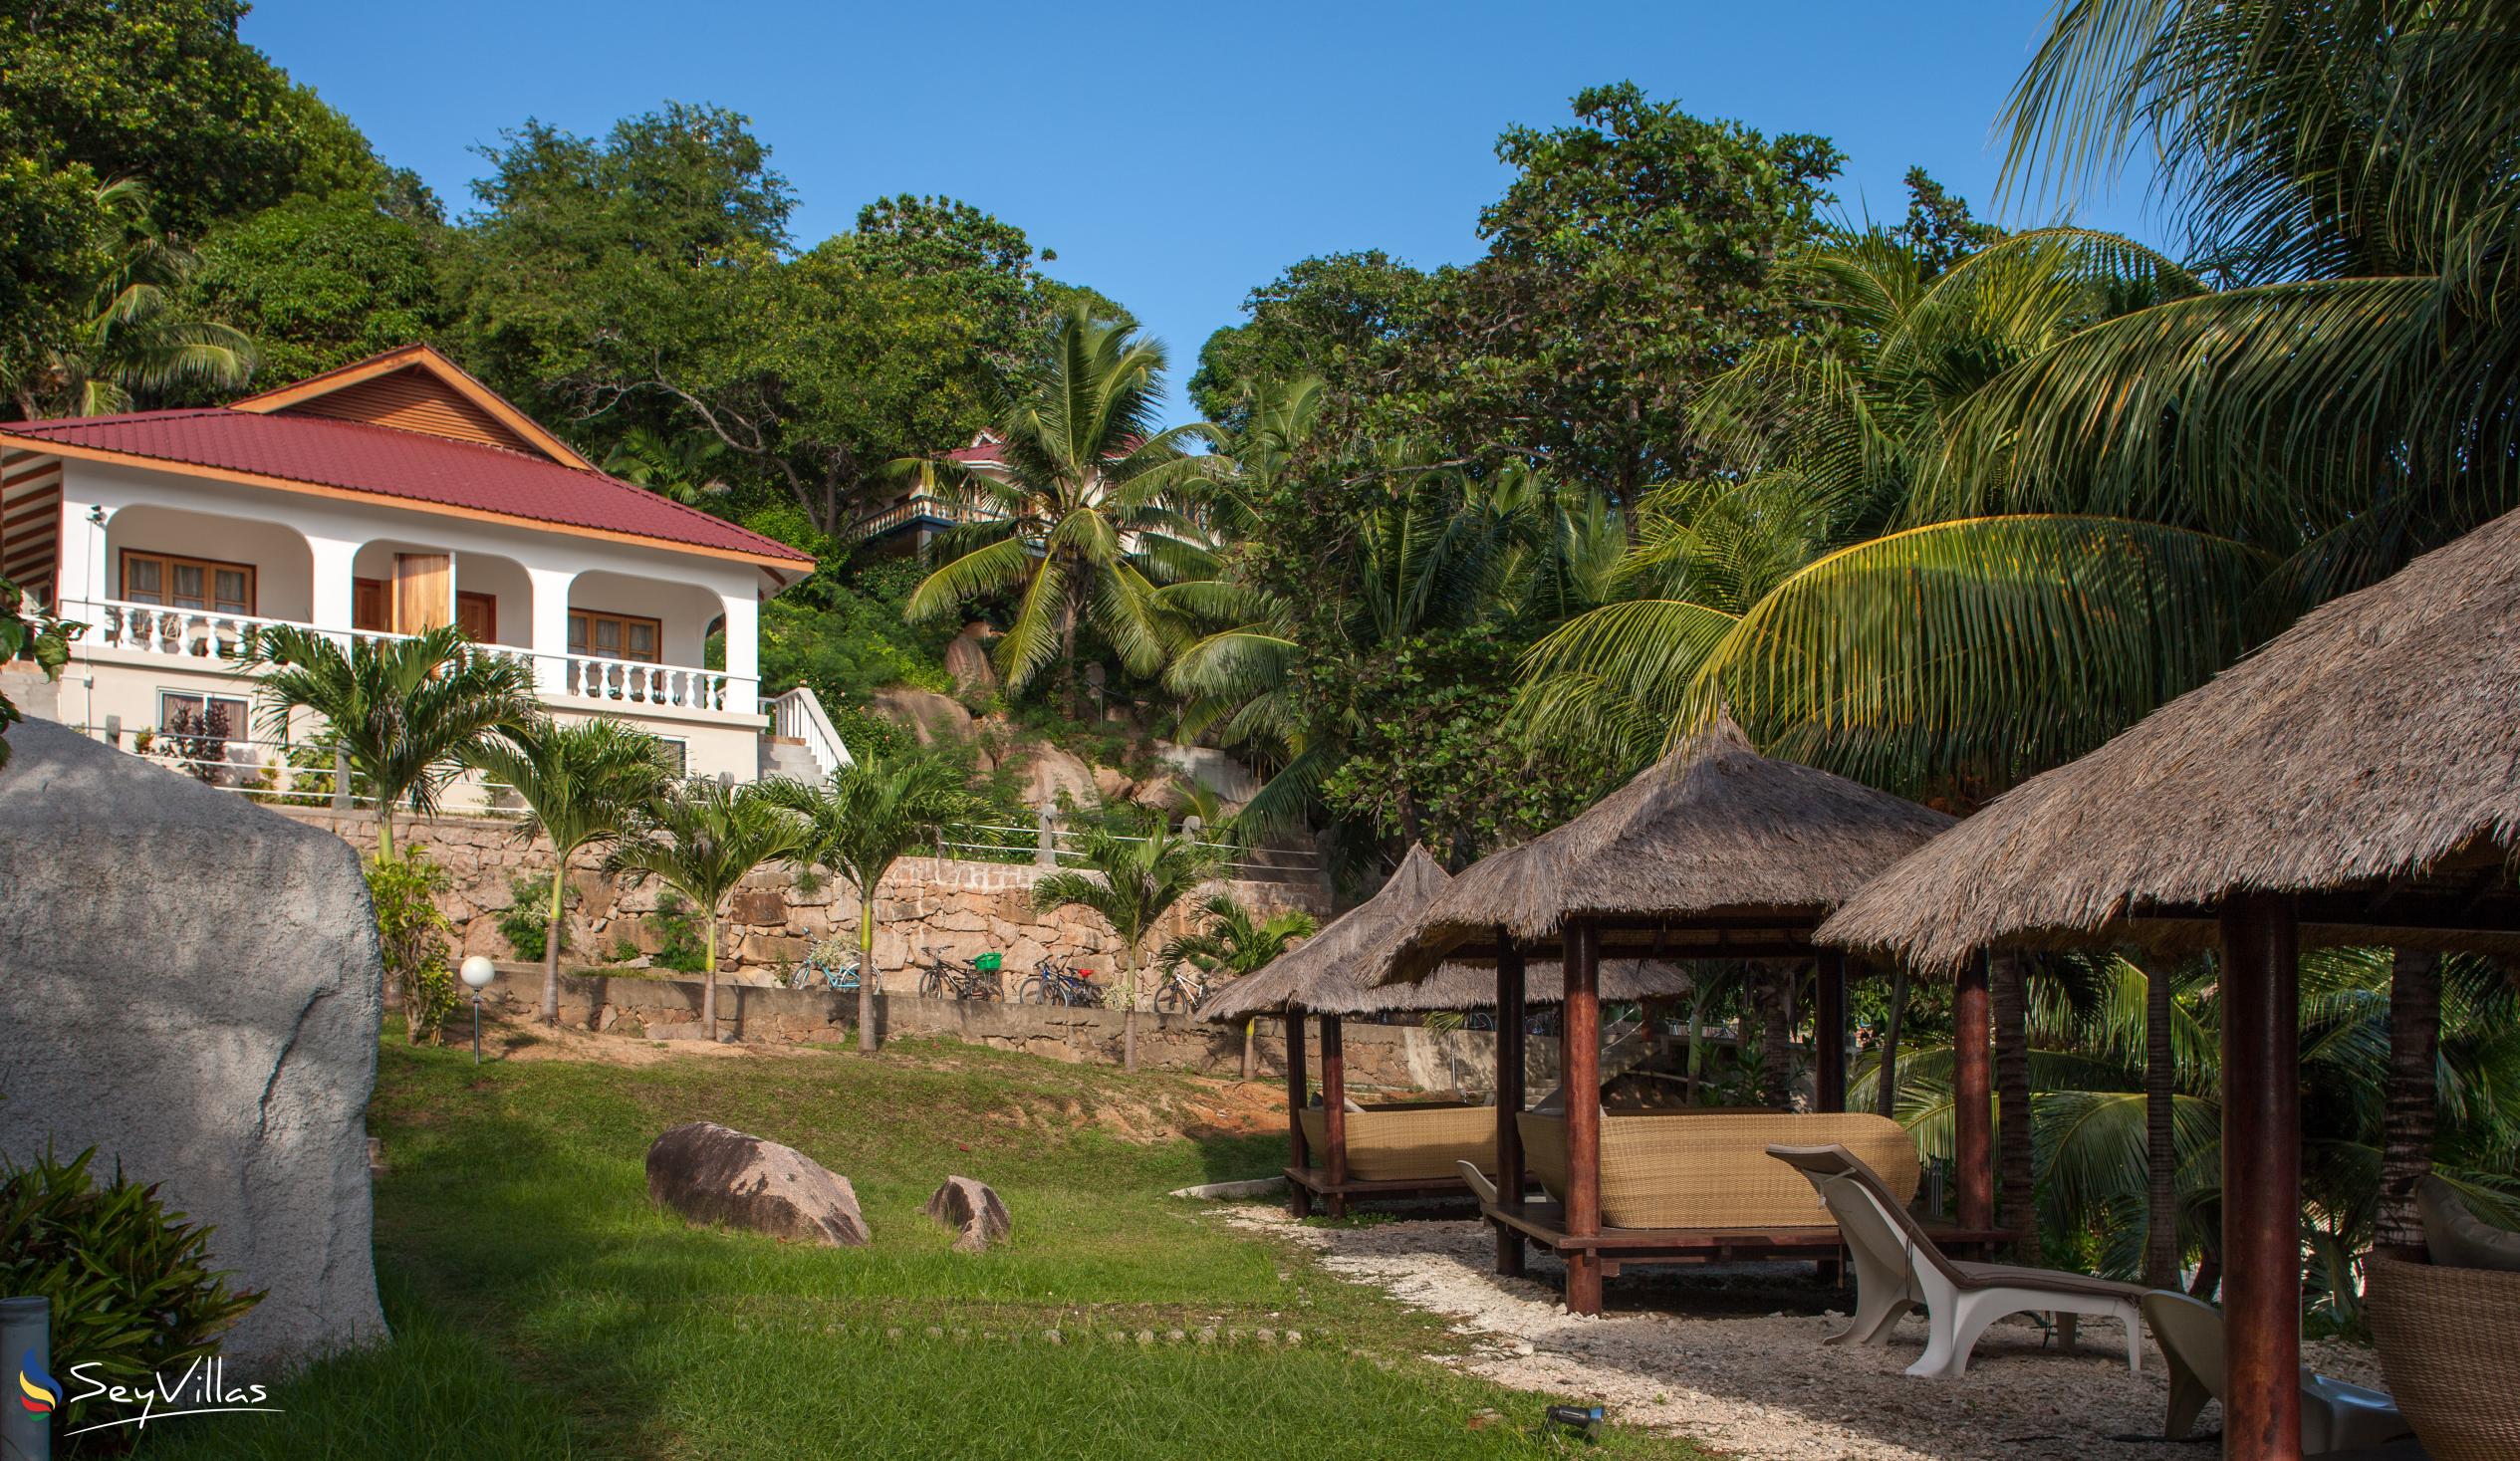 Foto 3: Patatran Village Hotel - Aussenbereich - La Digue (Seychellen)